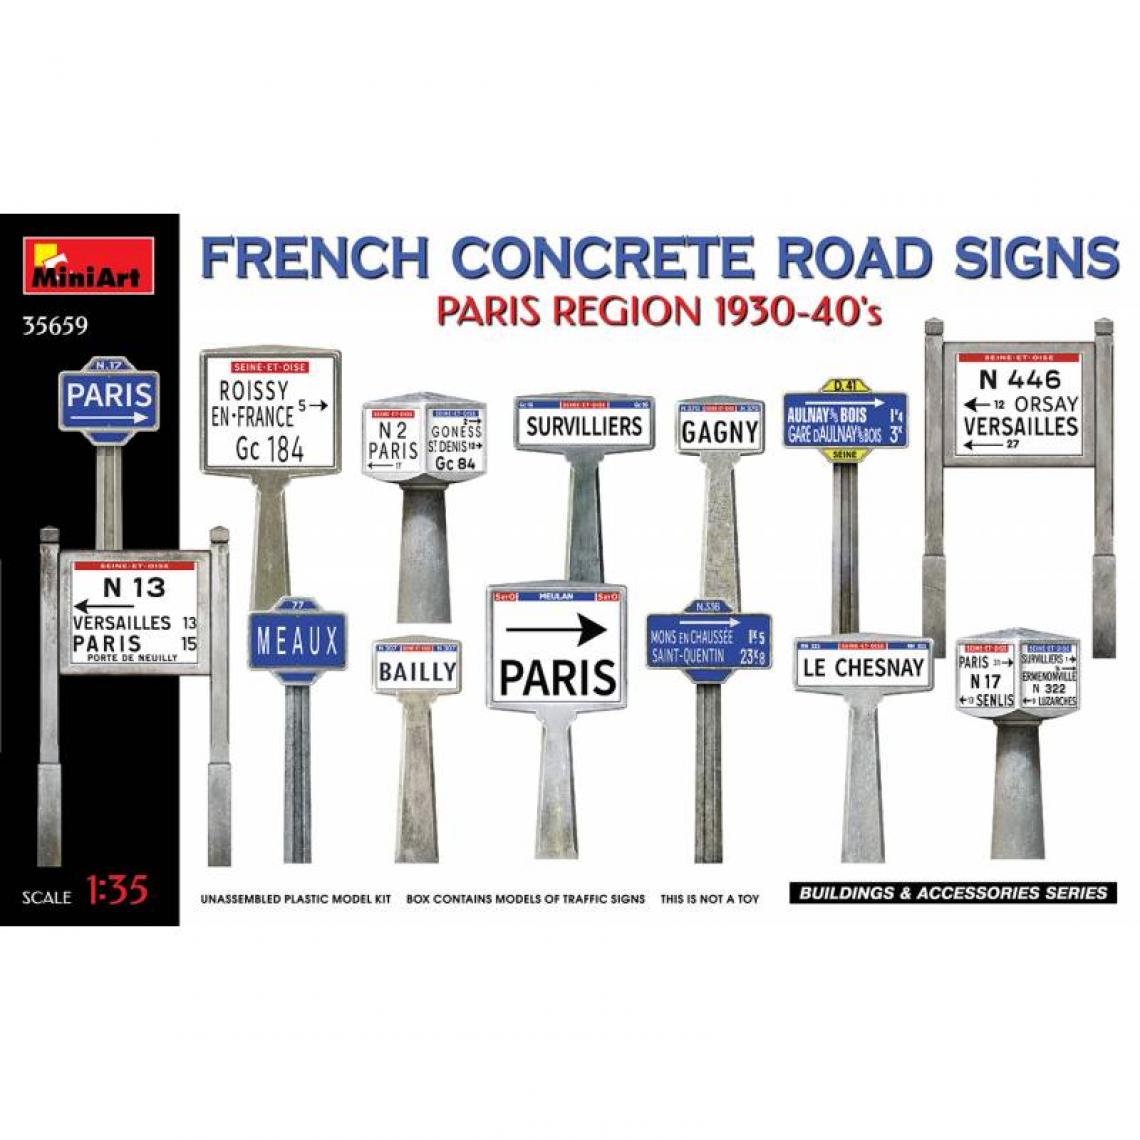 Mini Art - Figurine Mignature French Concrete Road Signs Paris Region 1930-40's - Figurines militaires